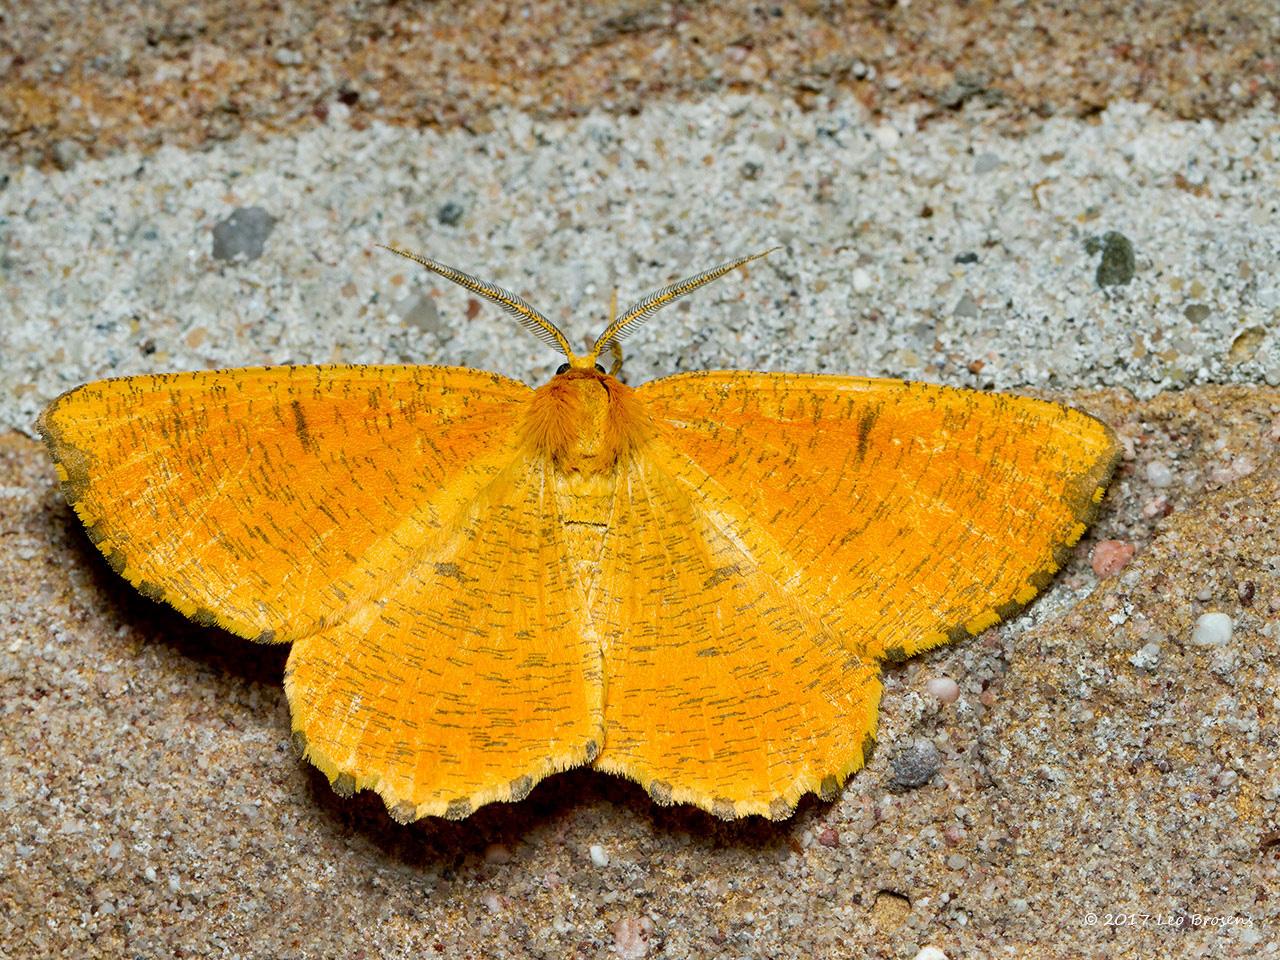 Oranje-iepentakvlinder-Angerona-prunaria-20140607g1280IMG_4715acrfb.jpg